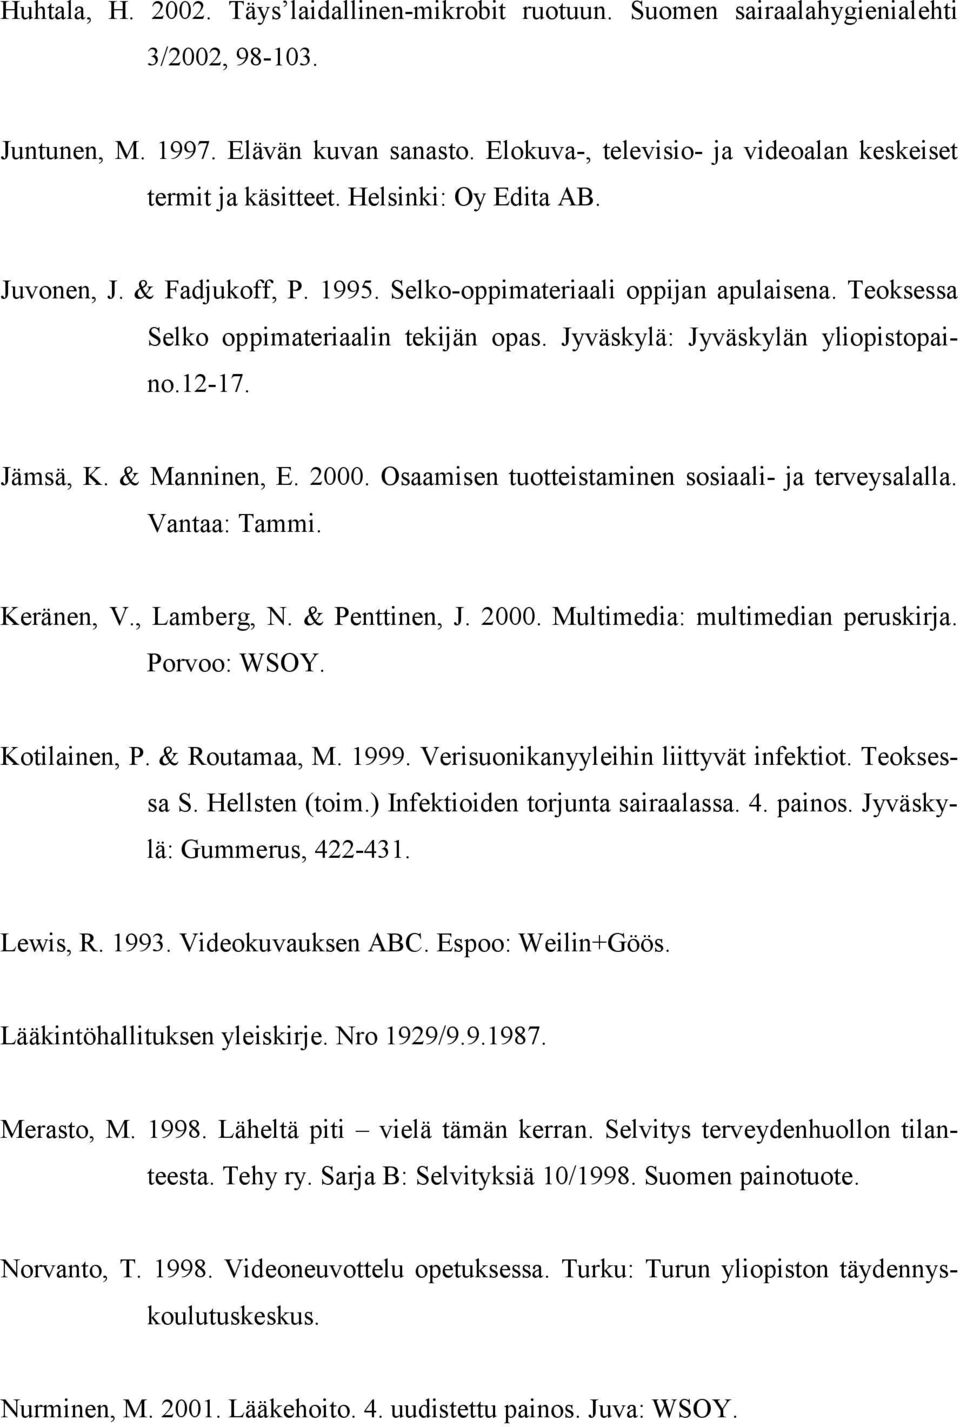 Teoksessa Selko oppimateriaalin tekijän opas. Jyväskylä: Jyväskylän yliopistopaino.12-17. Jämsä, K. & Manninen, E. 2000. Osaamisen tuotteistaminen sosiaali- ja terveysalalla. Vantaa: Tammi.